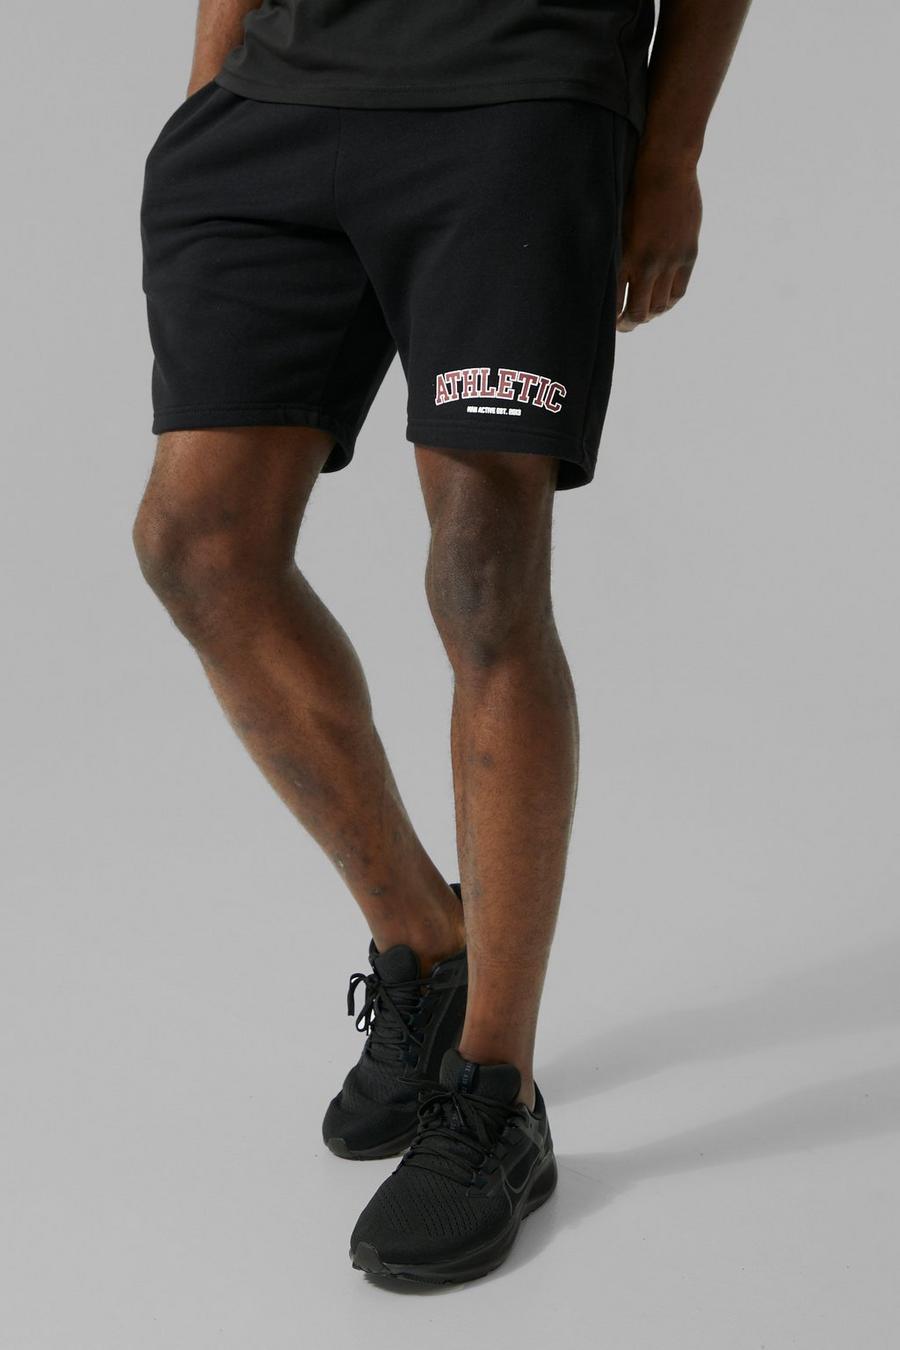 Pantalón corto MAN Active de gimnasio con estampado Athletic, Black negro